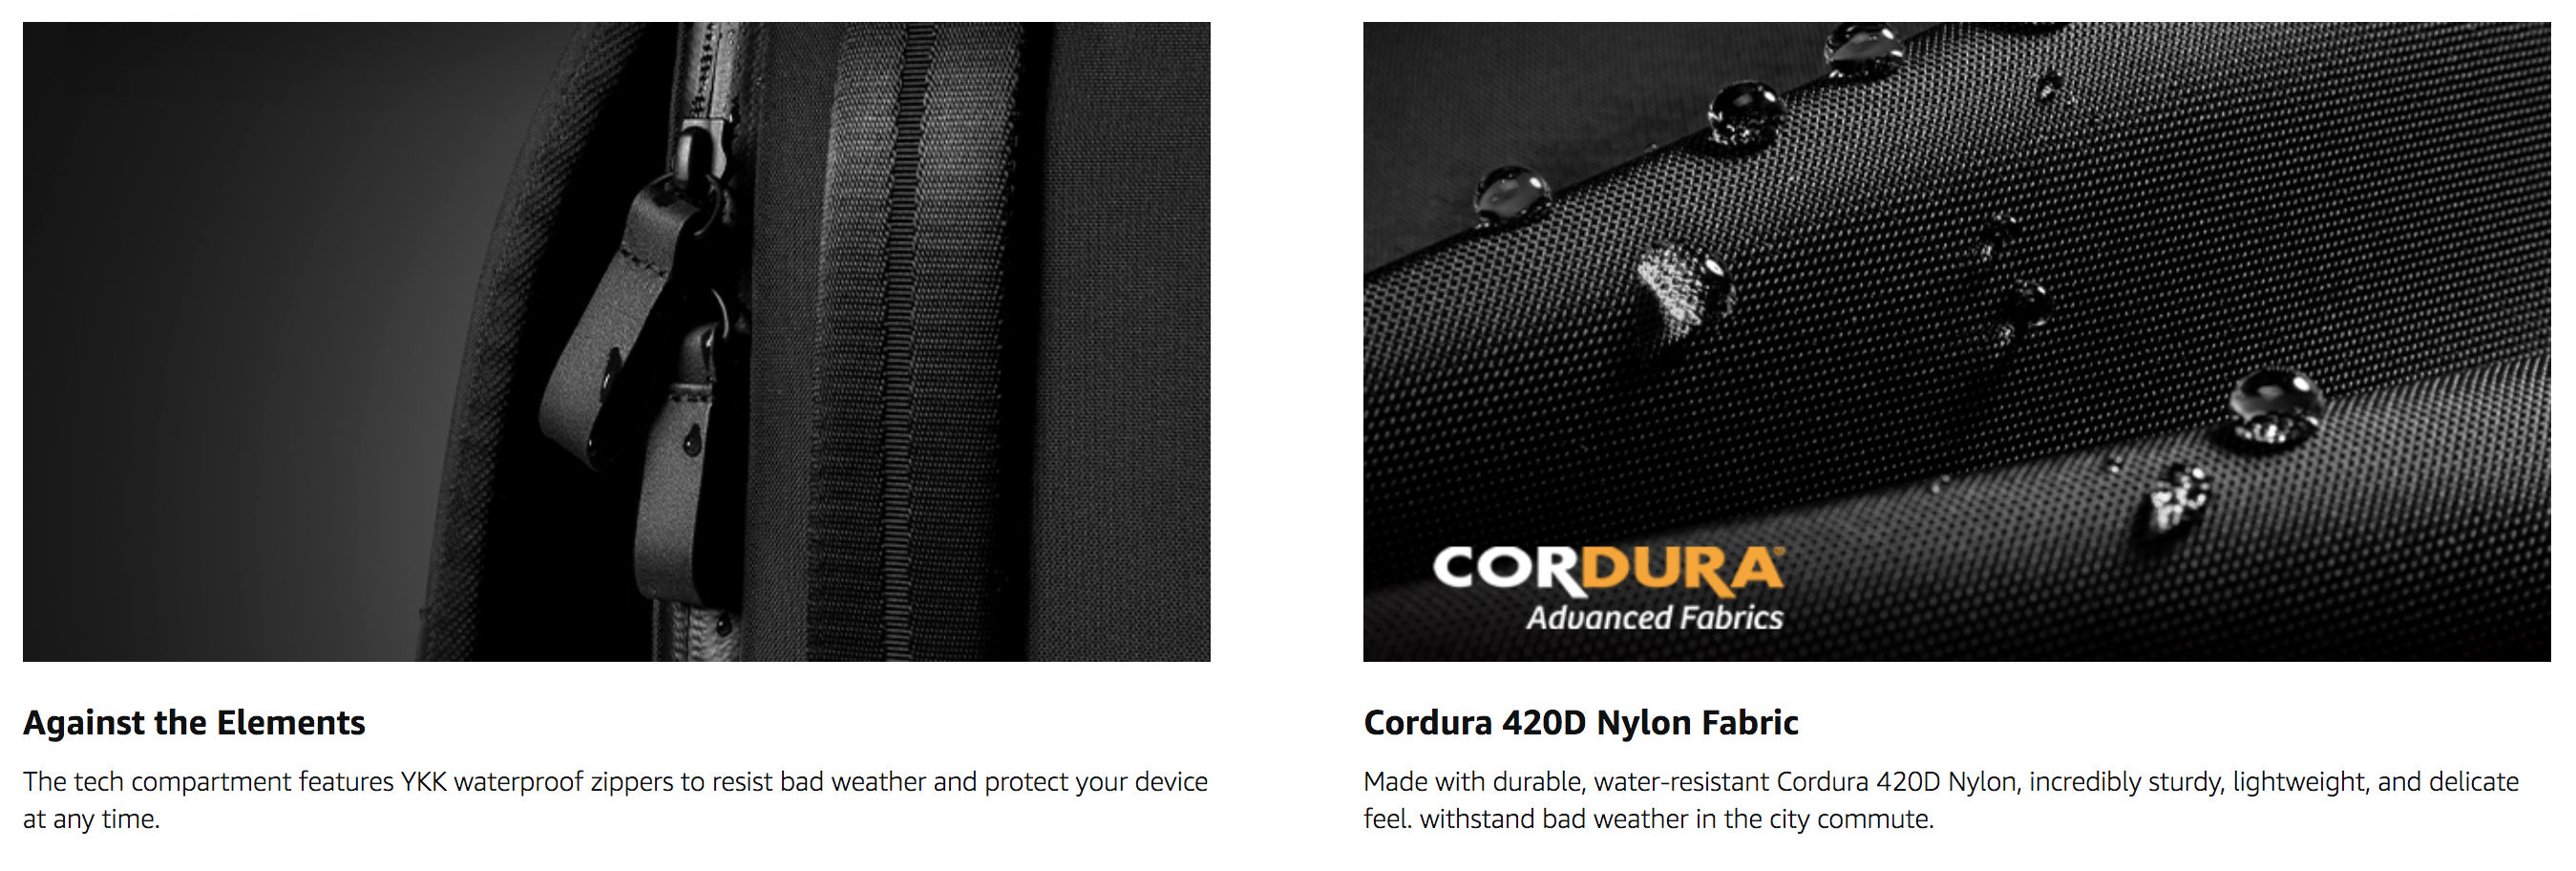 Chất lượng bền bỉ từ vải Cordura 420D Nylon trang bị trên Tomtoc Voyage-T50.